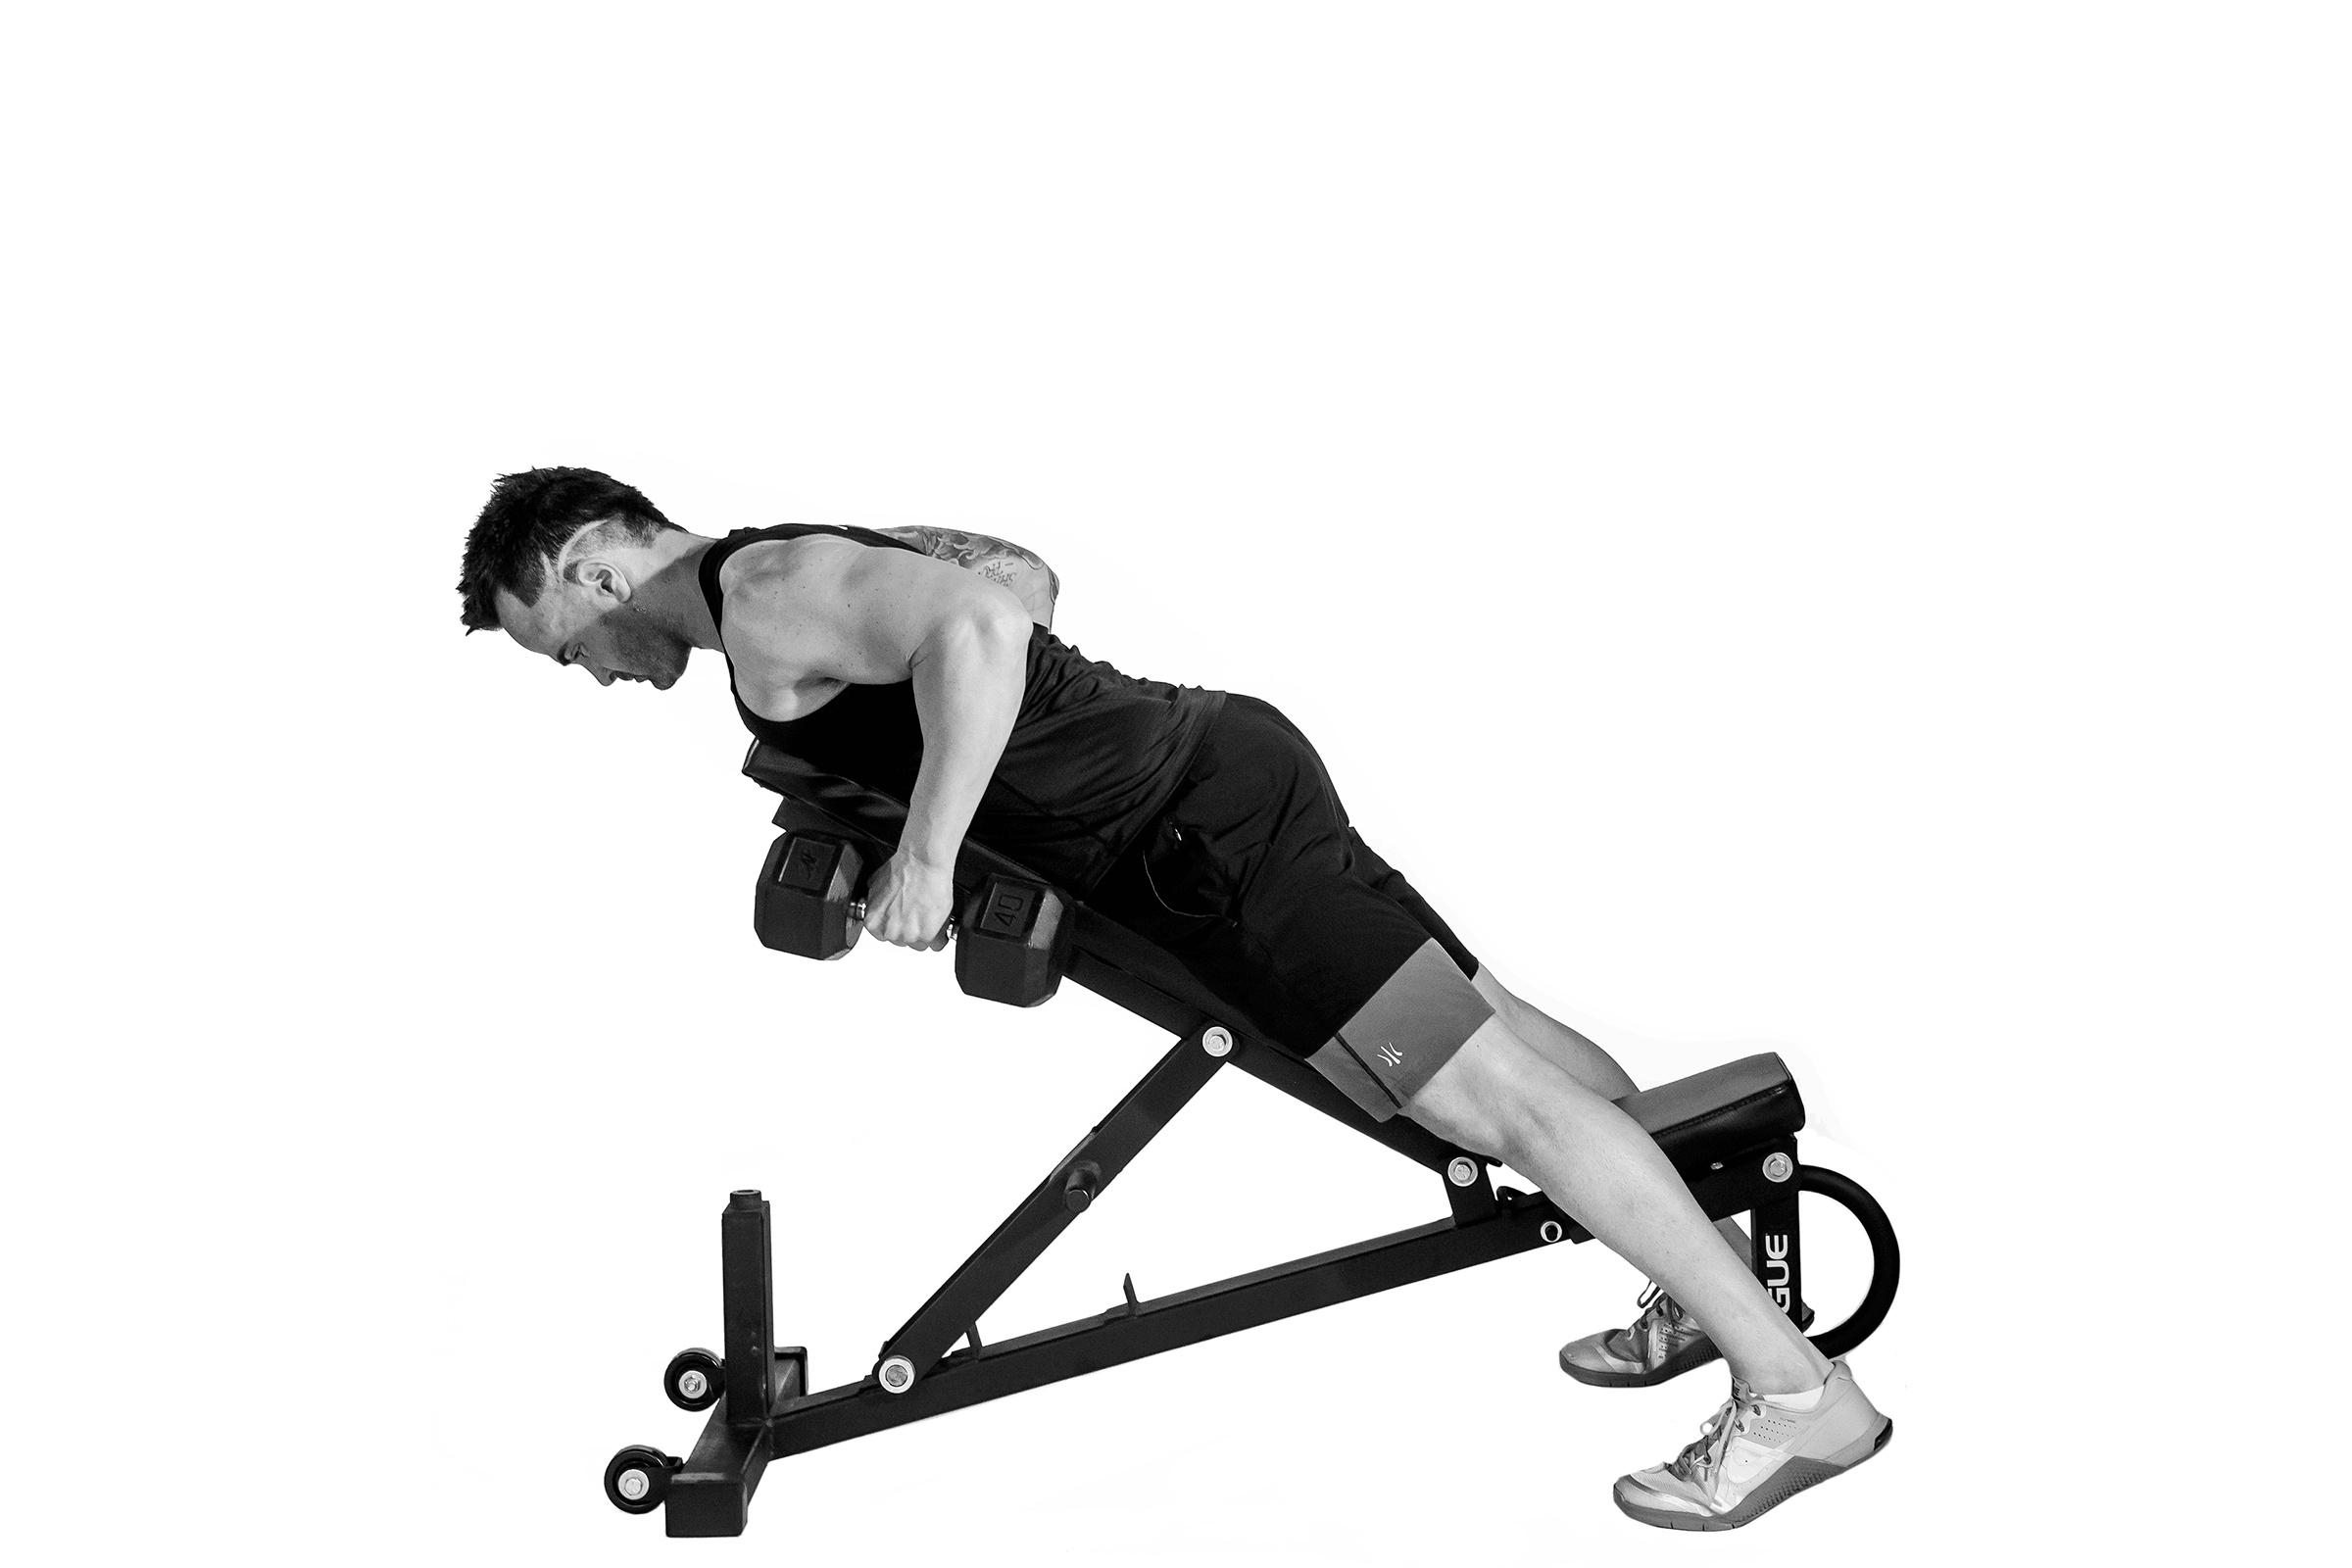 Le tirage en position semi-couche fait partie des exercices recommands pour muscler le haut du corps.